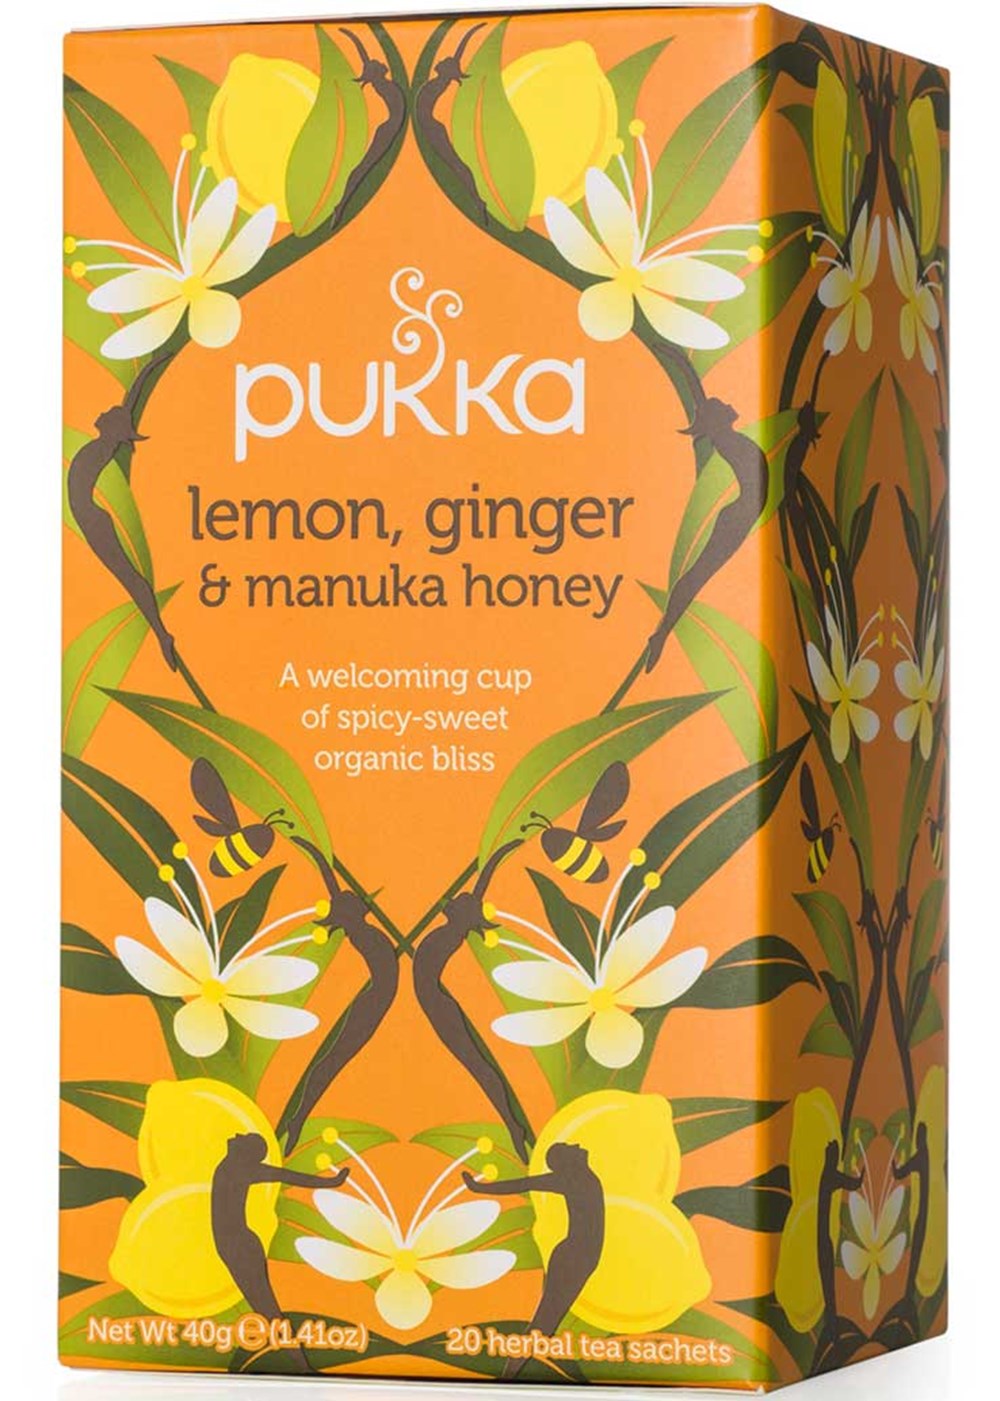 Pukka Lemon, ginger and manuka